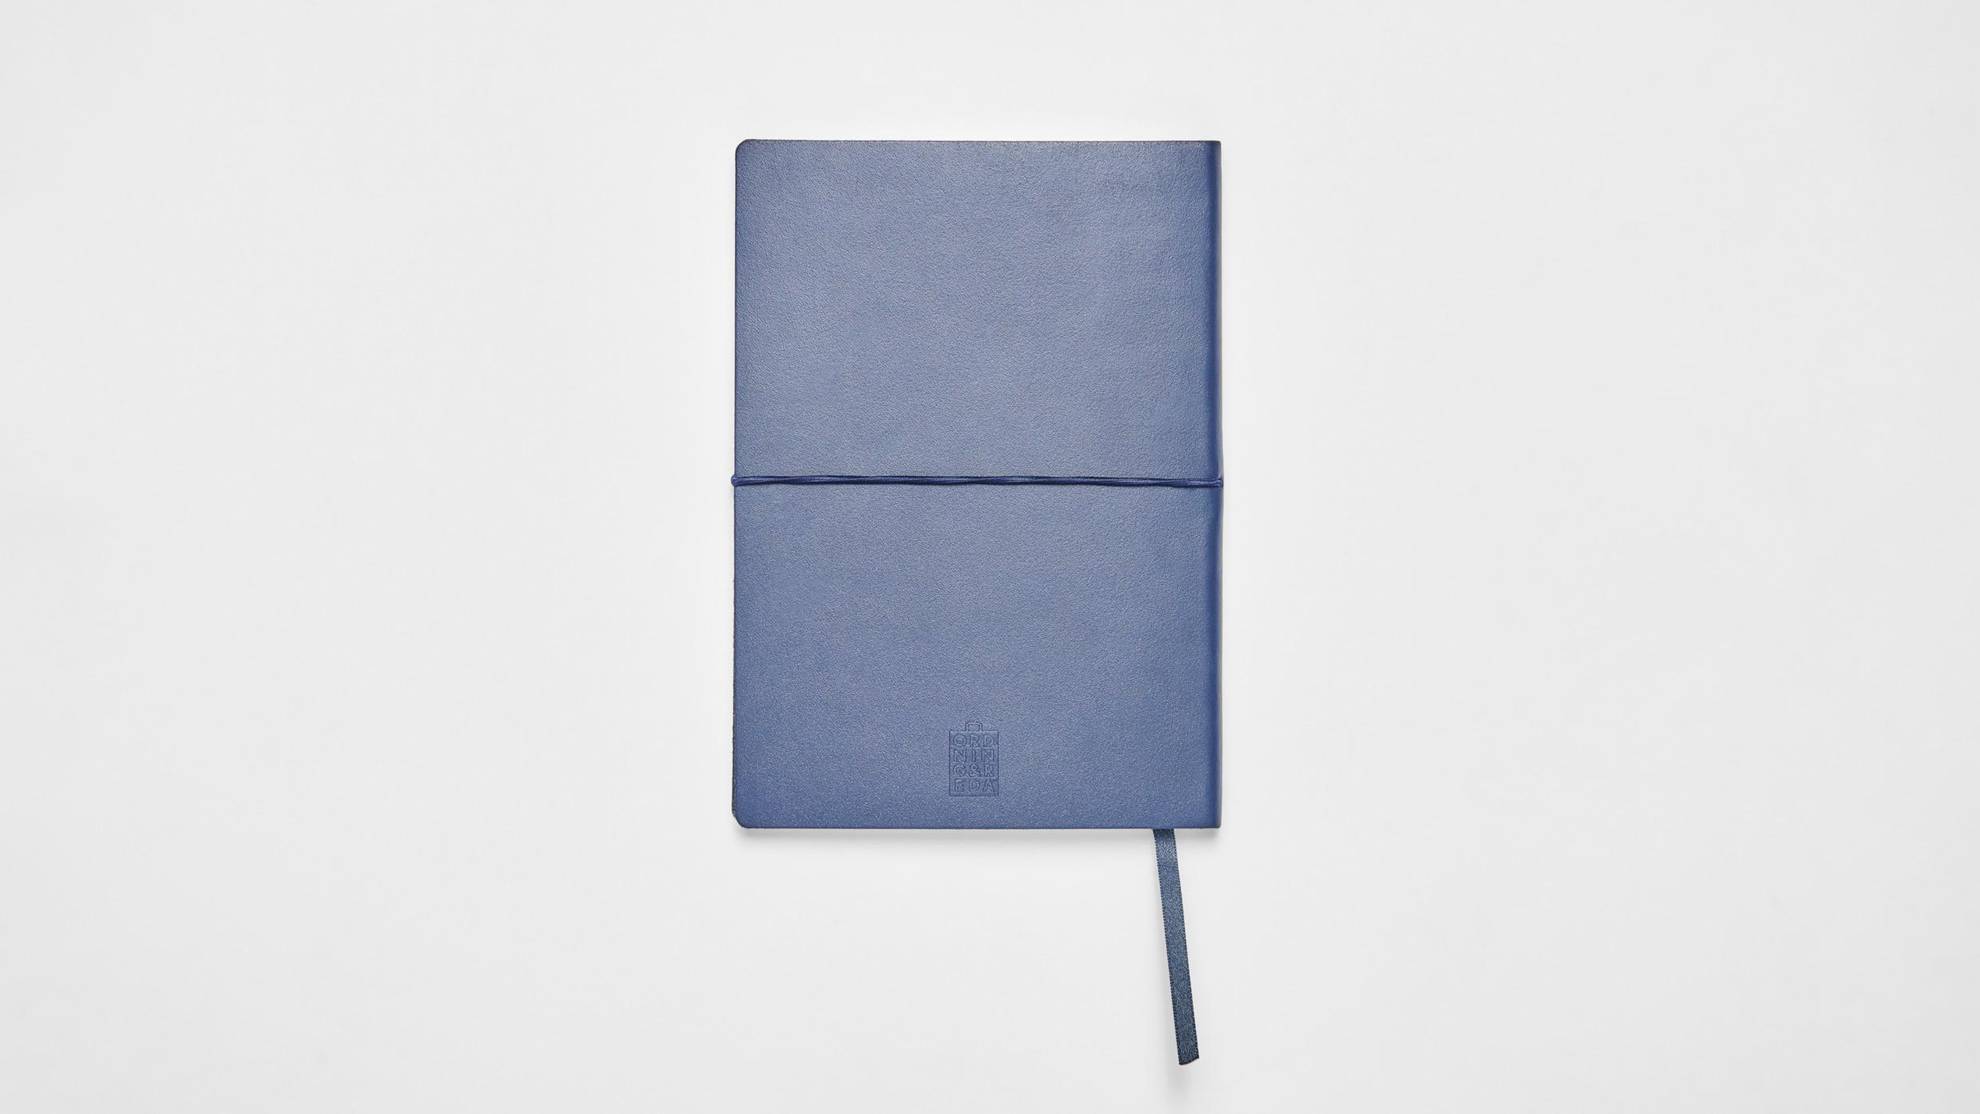 Een blauwe notitieblok op een wit oppervlak.